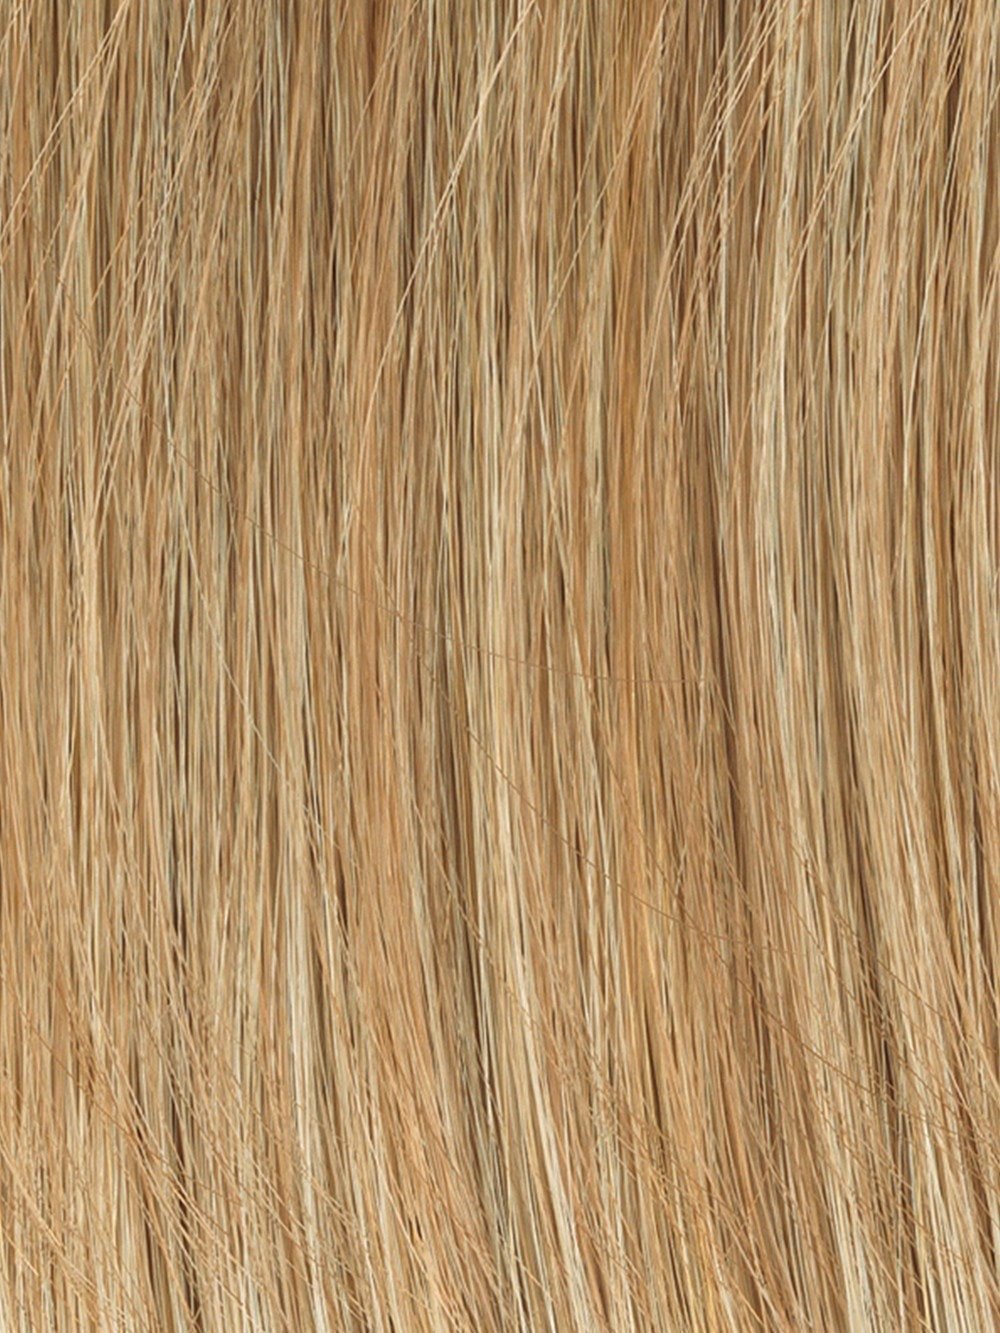 Medium Blonde | Golden blonde or dark blonde with salon highlights 